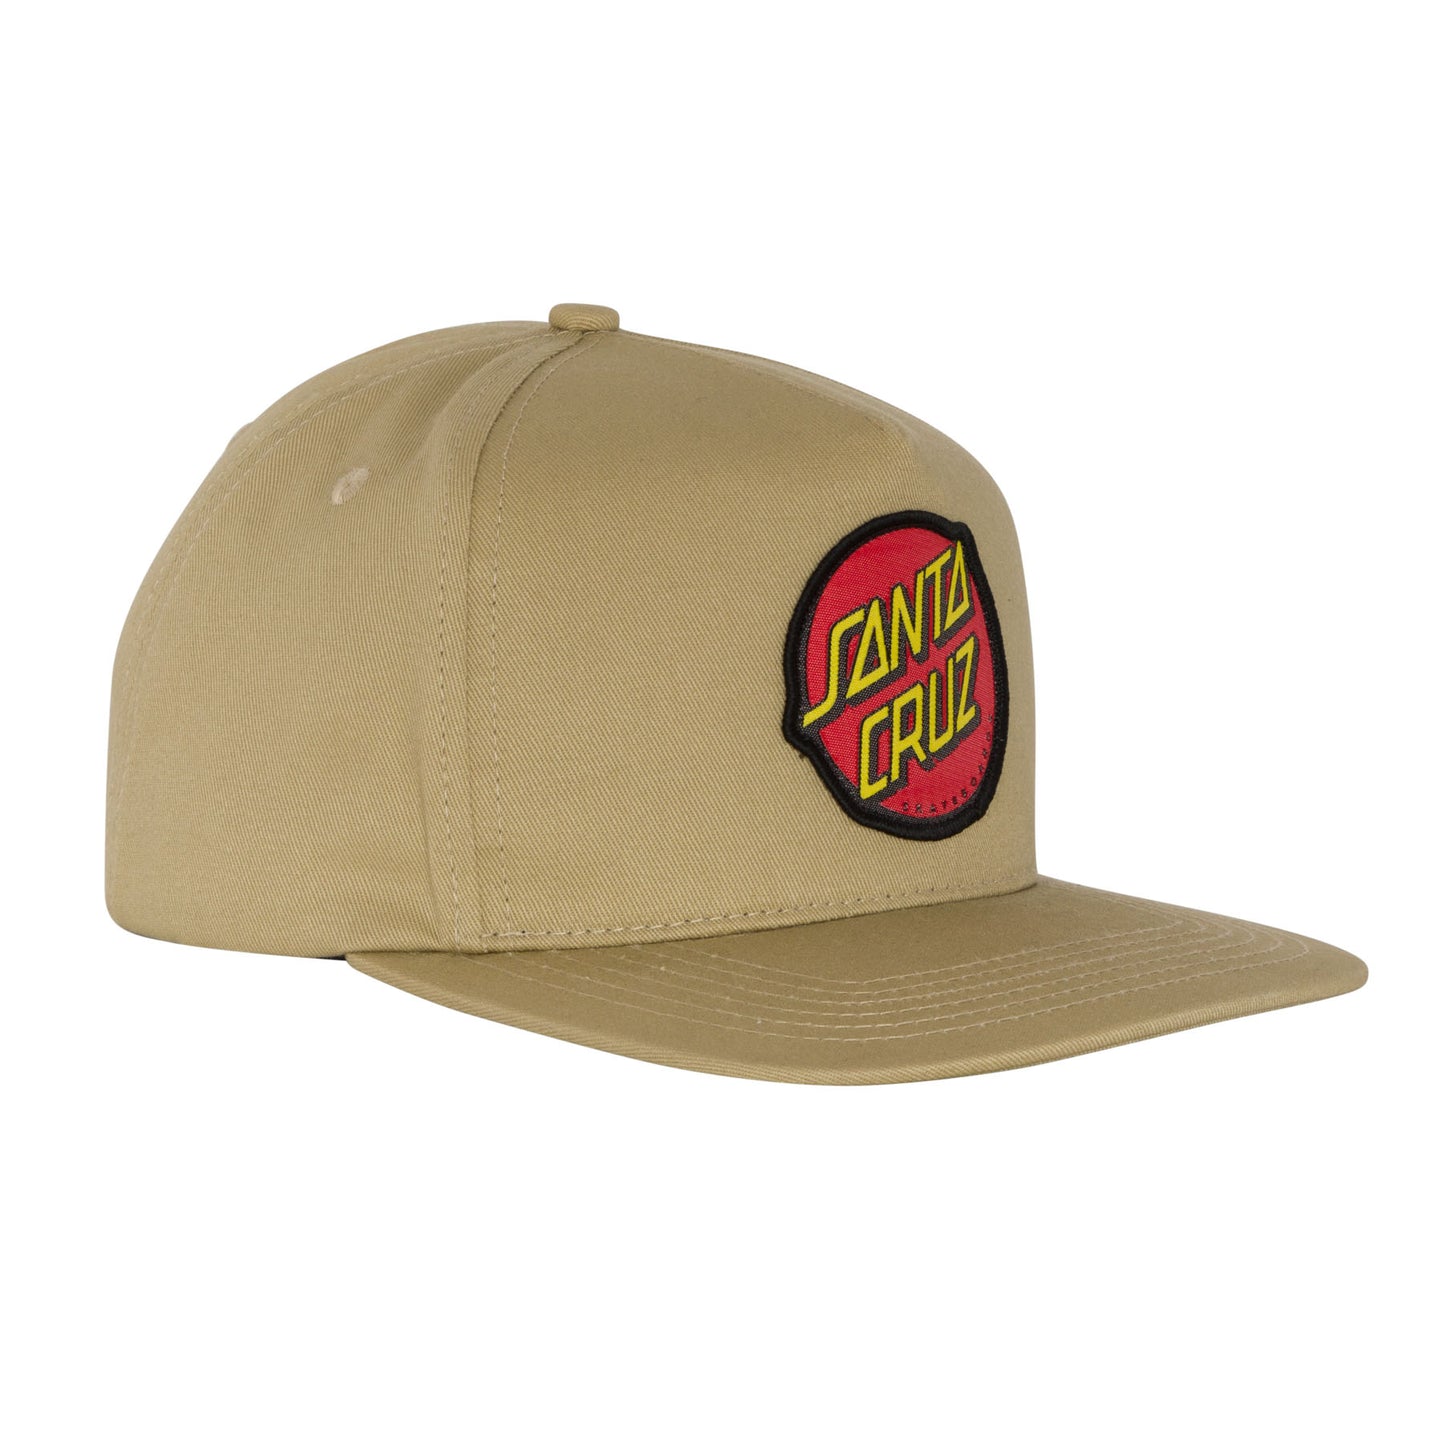 Santa Cruz Classic Snapback Hat - Tan